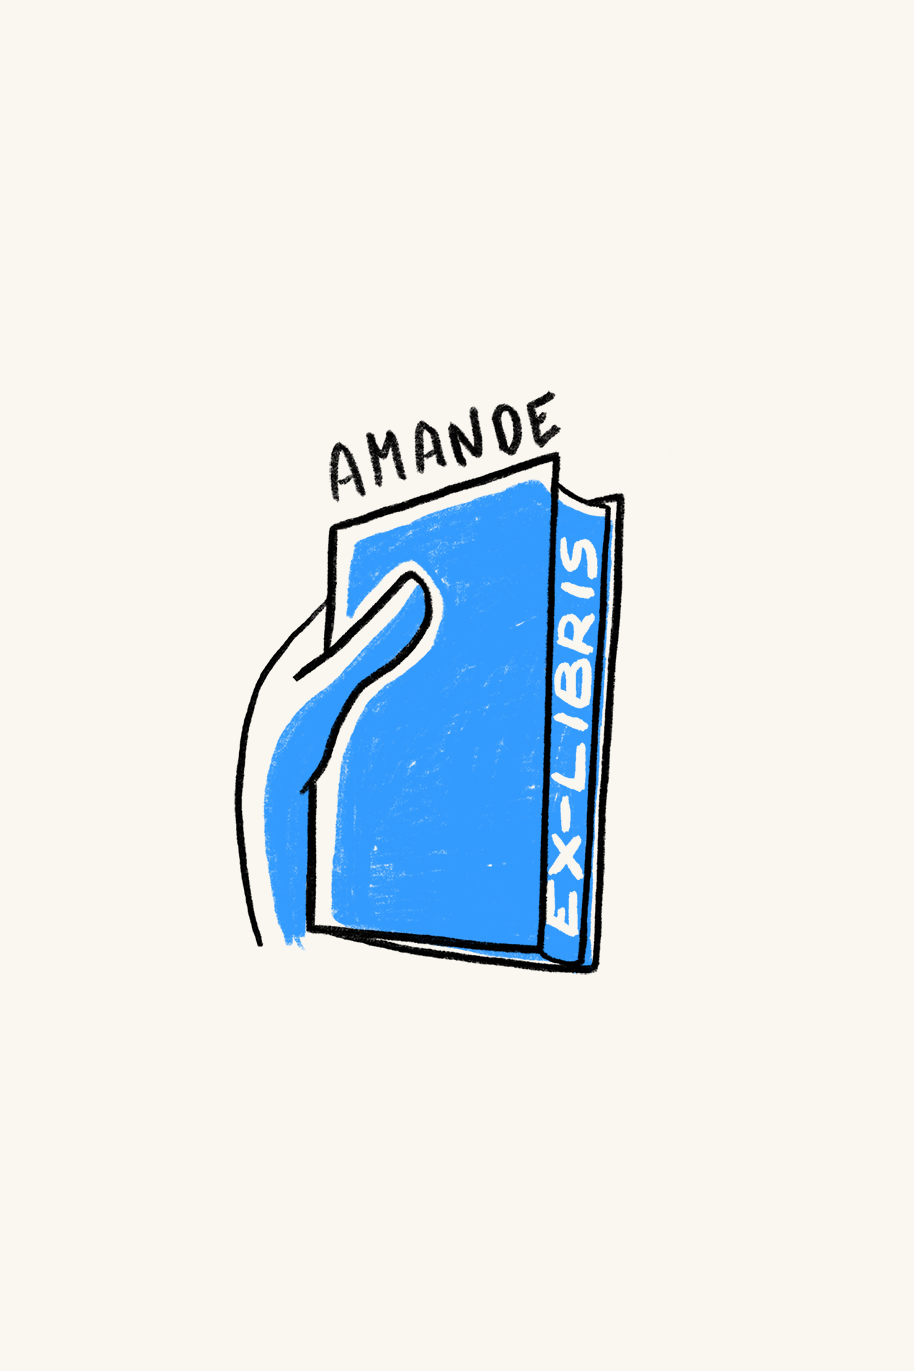 Dibujo de una mano cogiendo un libro azul